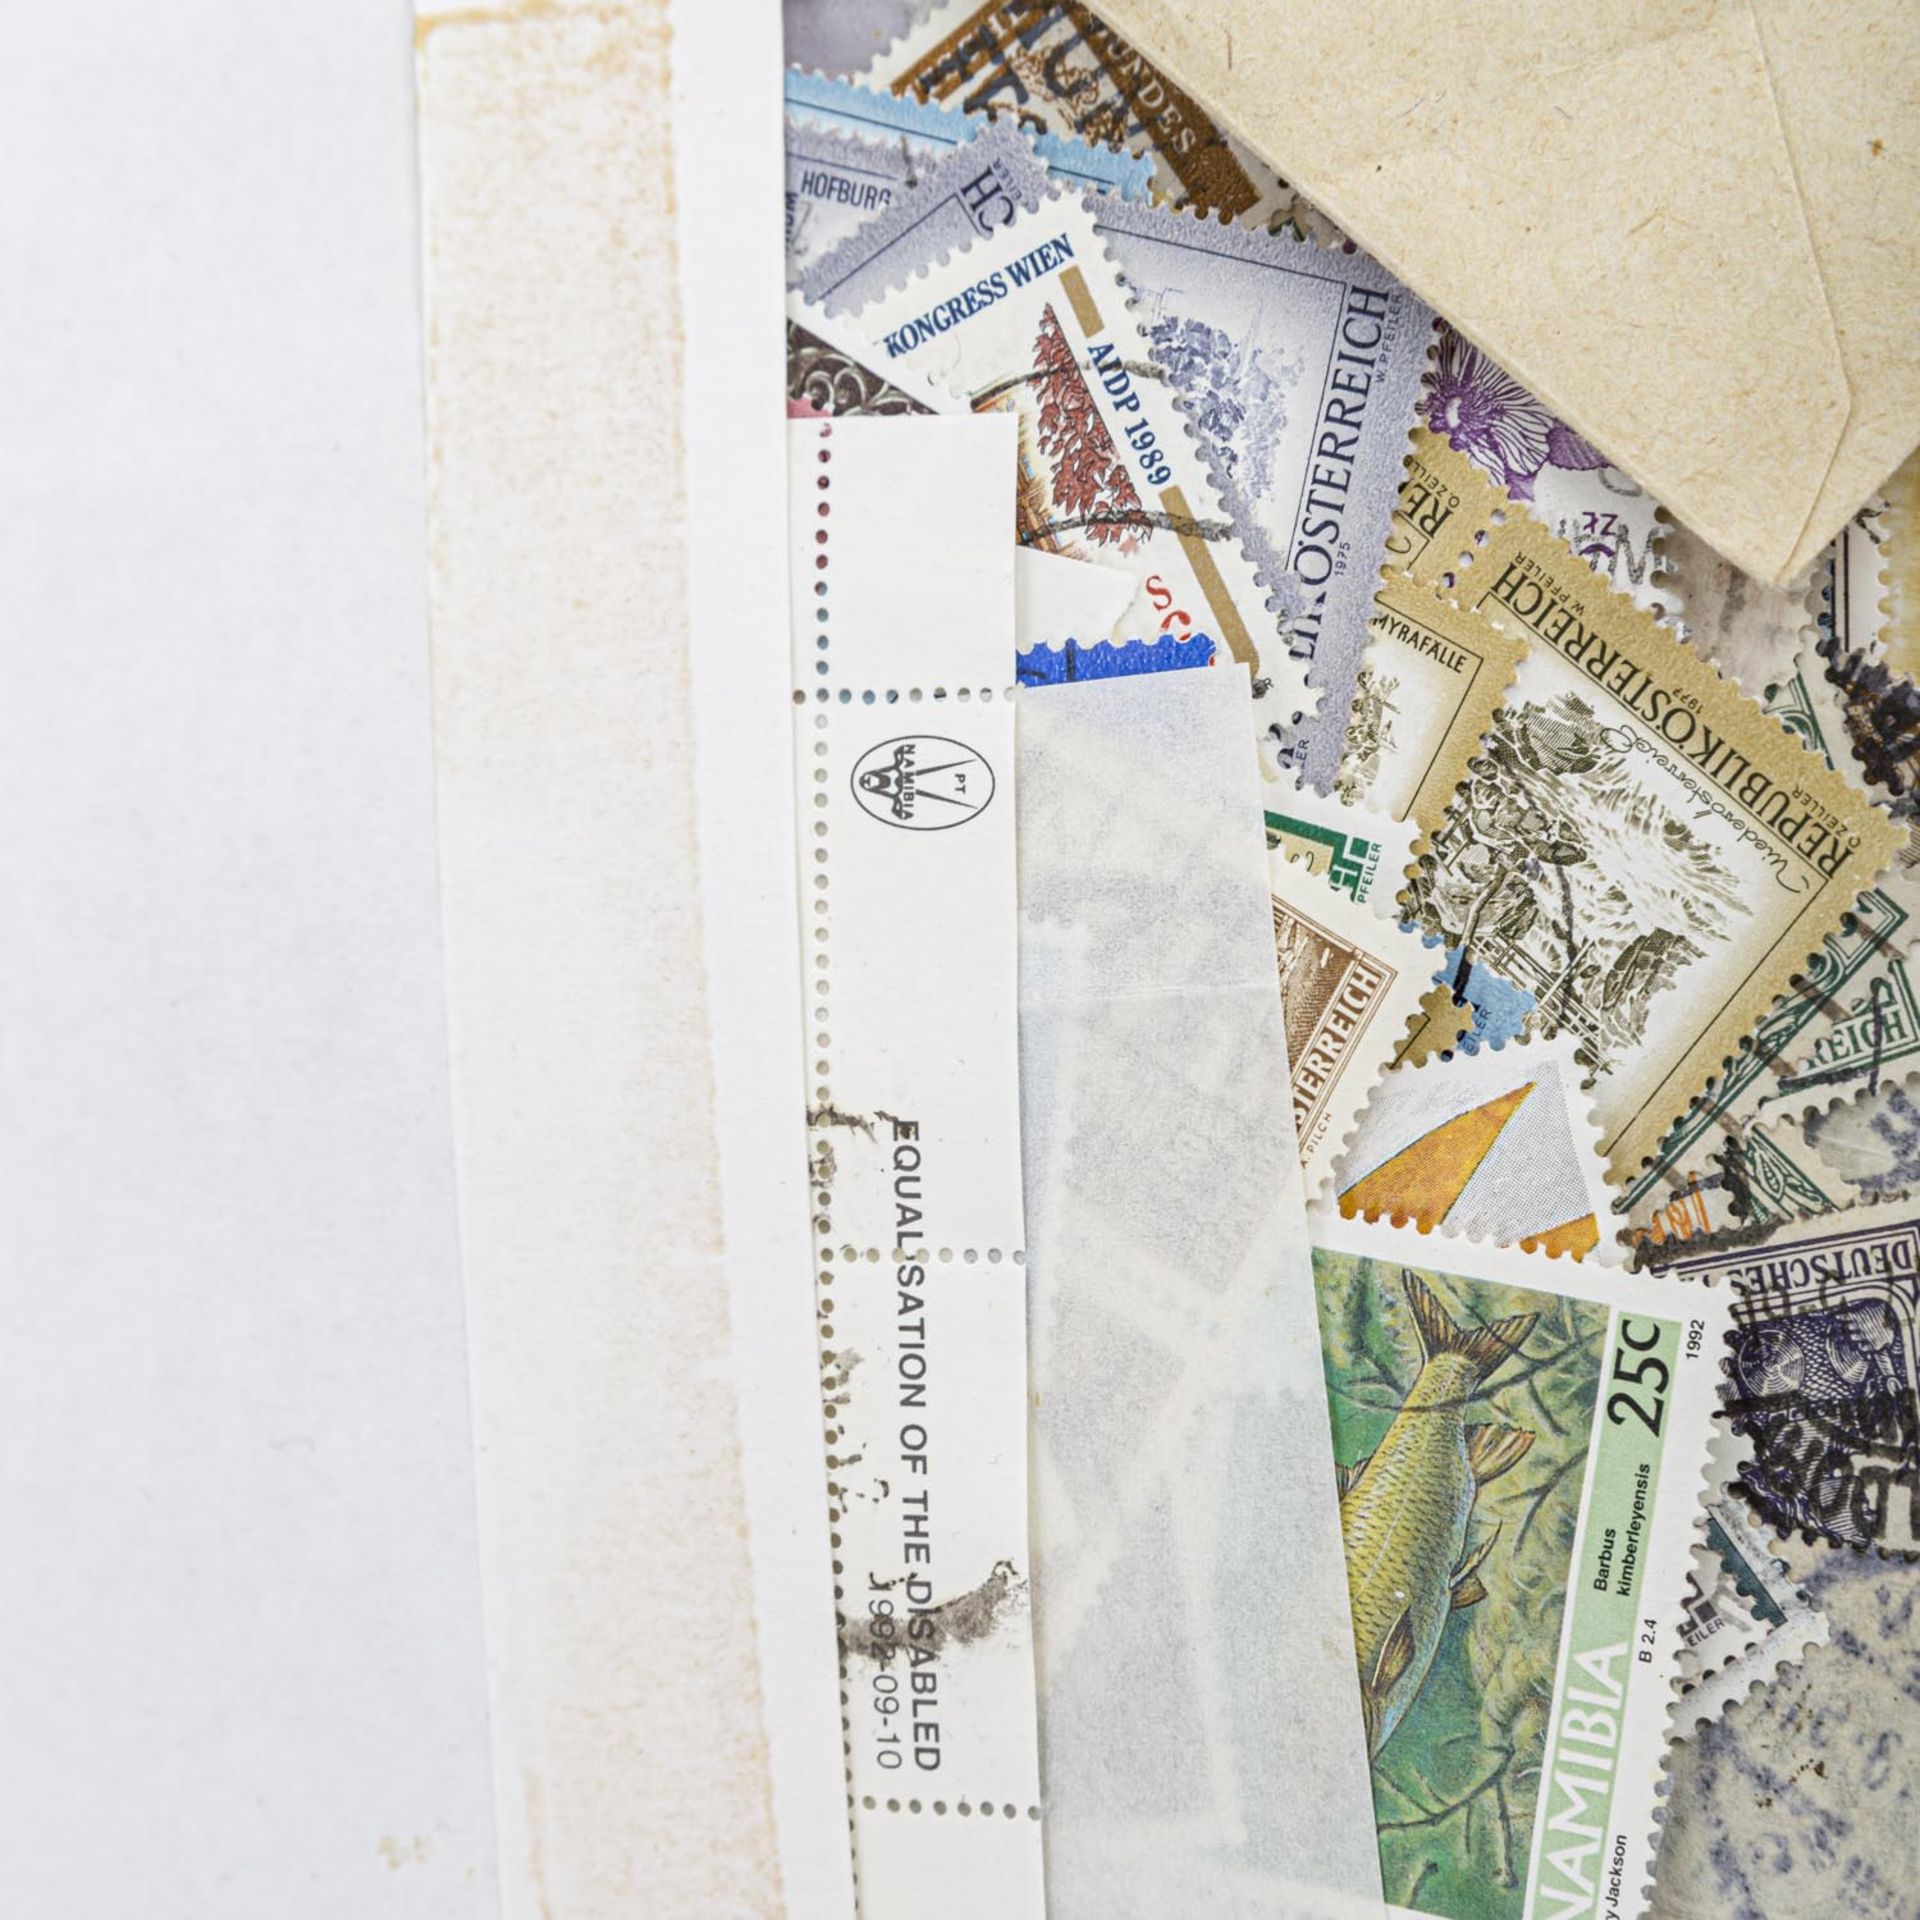 Rest einer größeren Einlieferung,darunter Dt. Reich Infla Bögen, afrikanische Briefmarken, etc. - Bild 2 aus 8